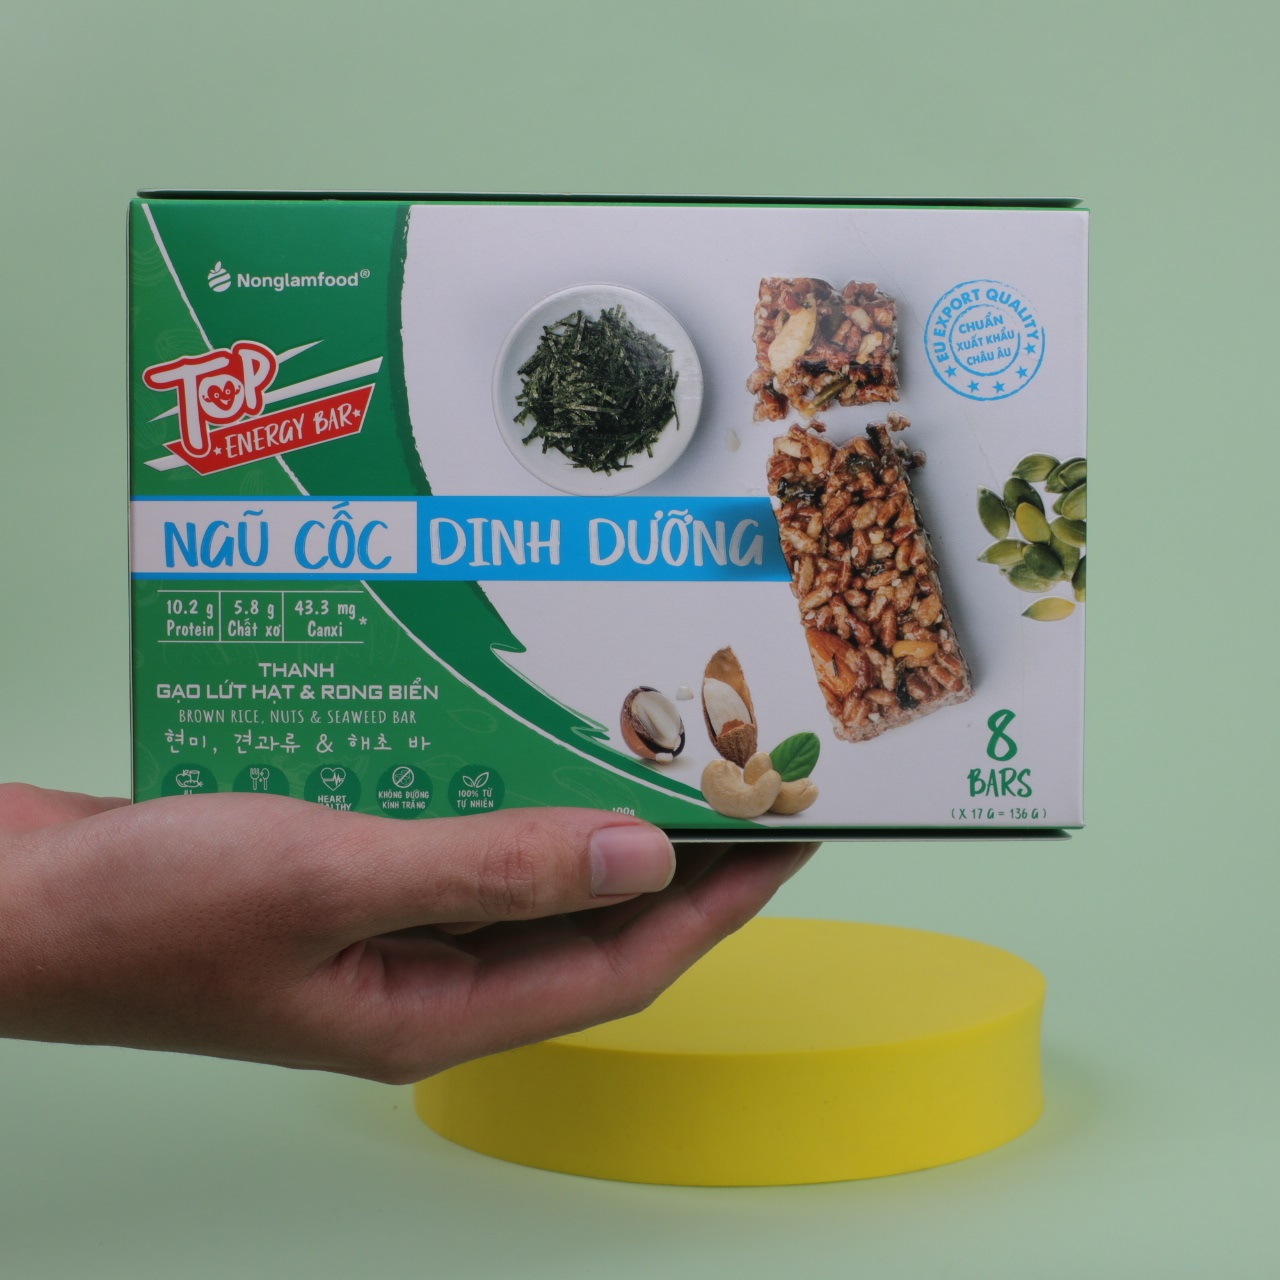 Hình ảnh [THUẦN CHAY] Thanh gạo lứt Hạt & Rong Biển Nonglamfood hộp 8 thanh 136g | Chay mặn đều dùng được | Hỗ trợ ăn kiêng giảm cân | Bữa ăn dinh dưỡng thay thế lành mạnh